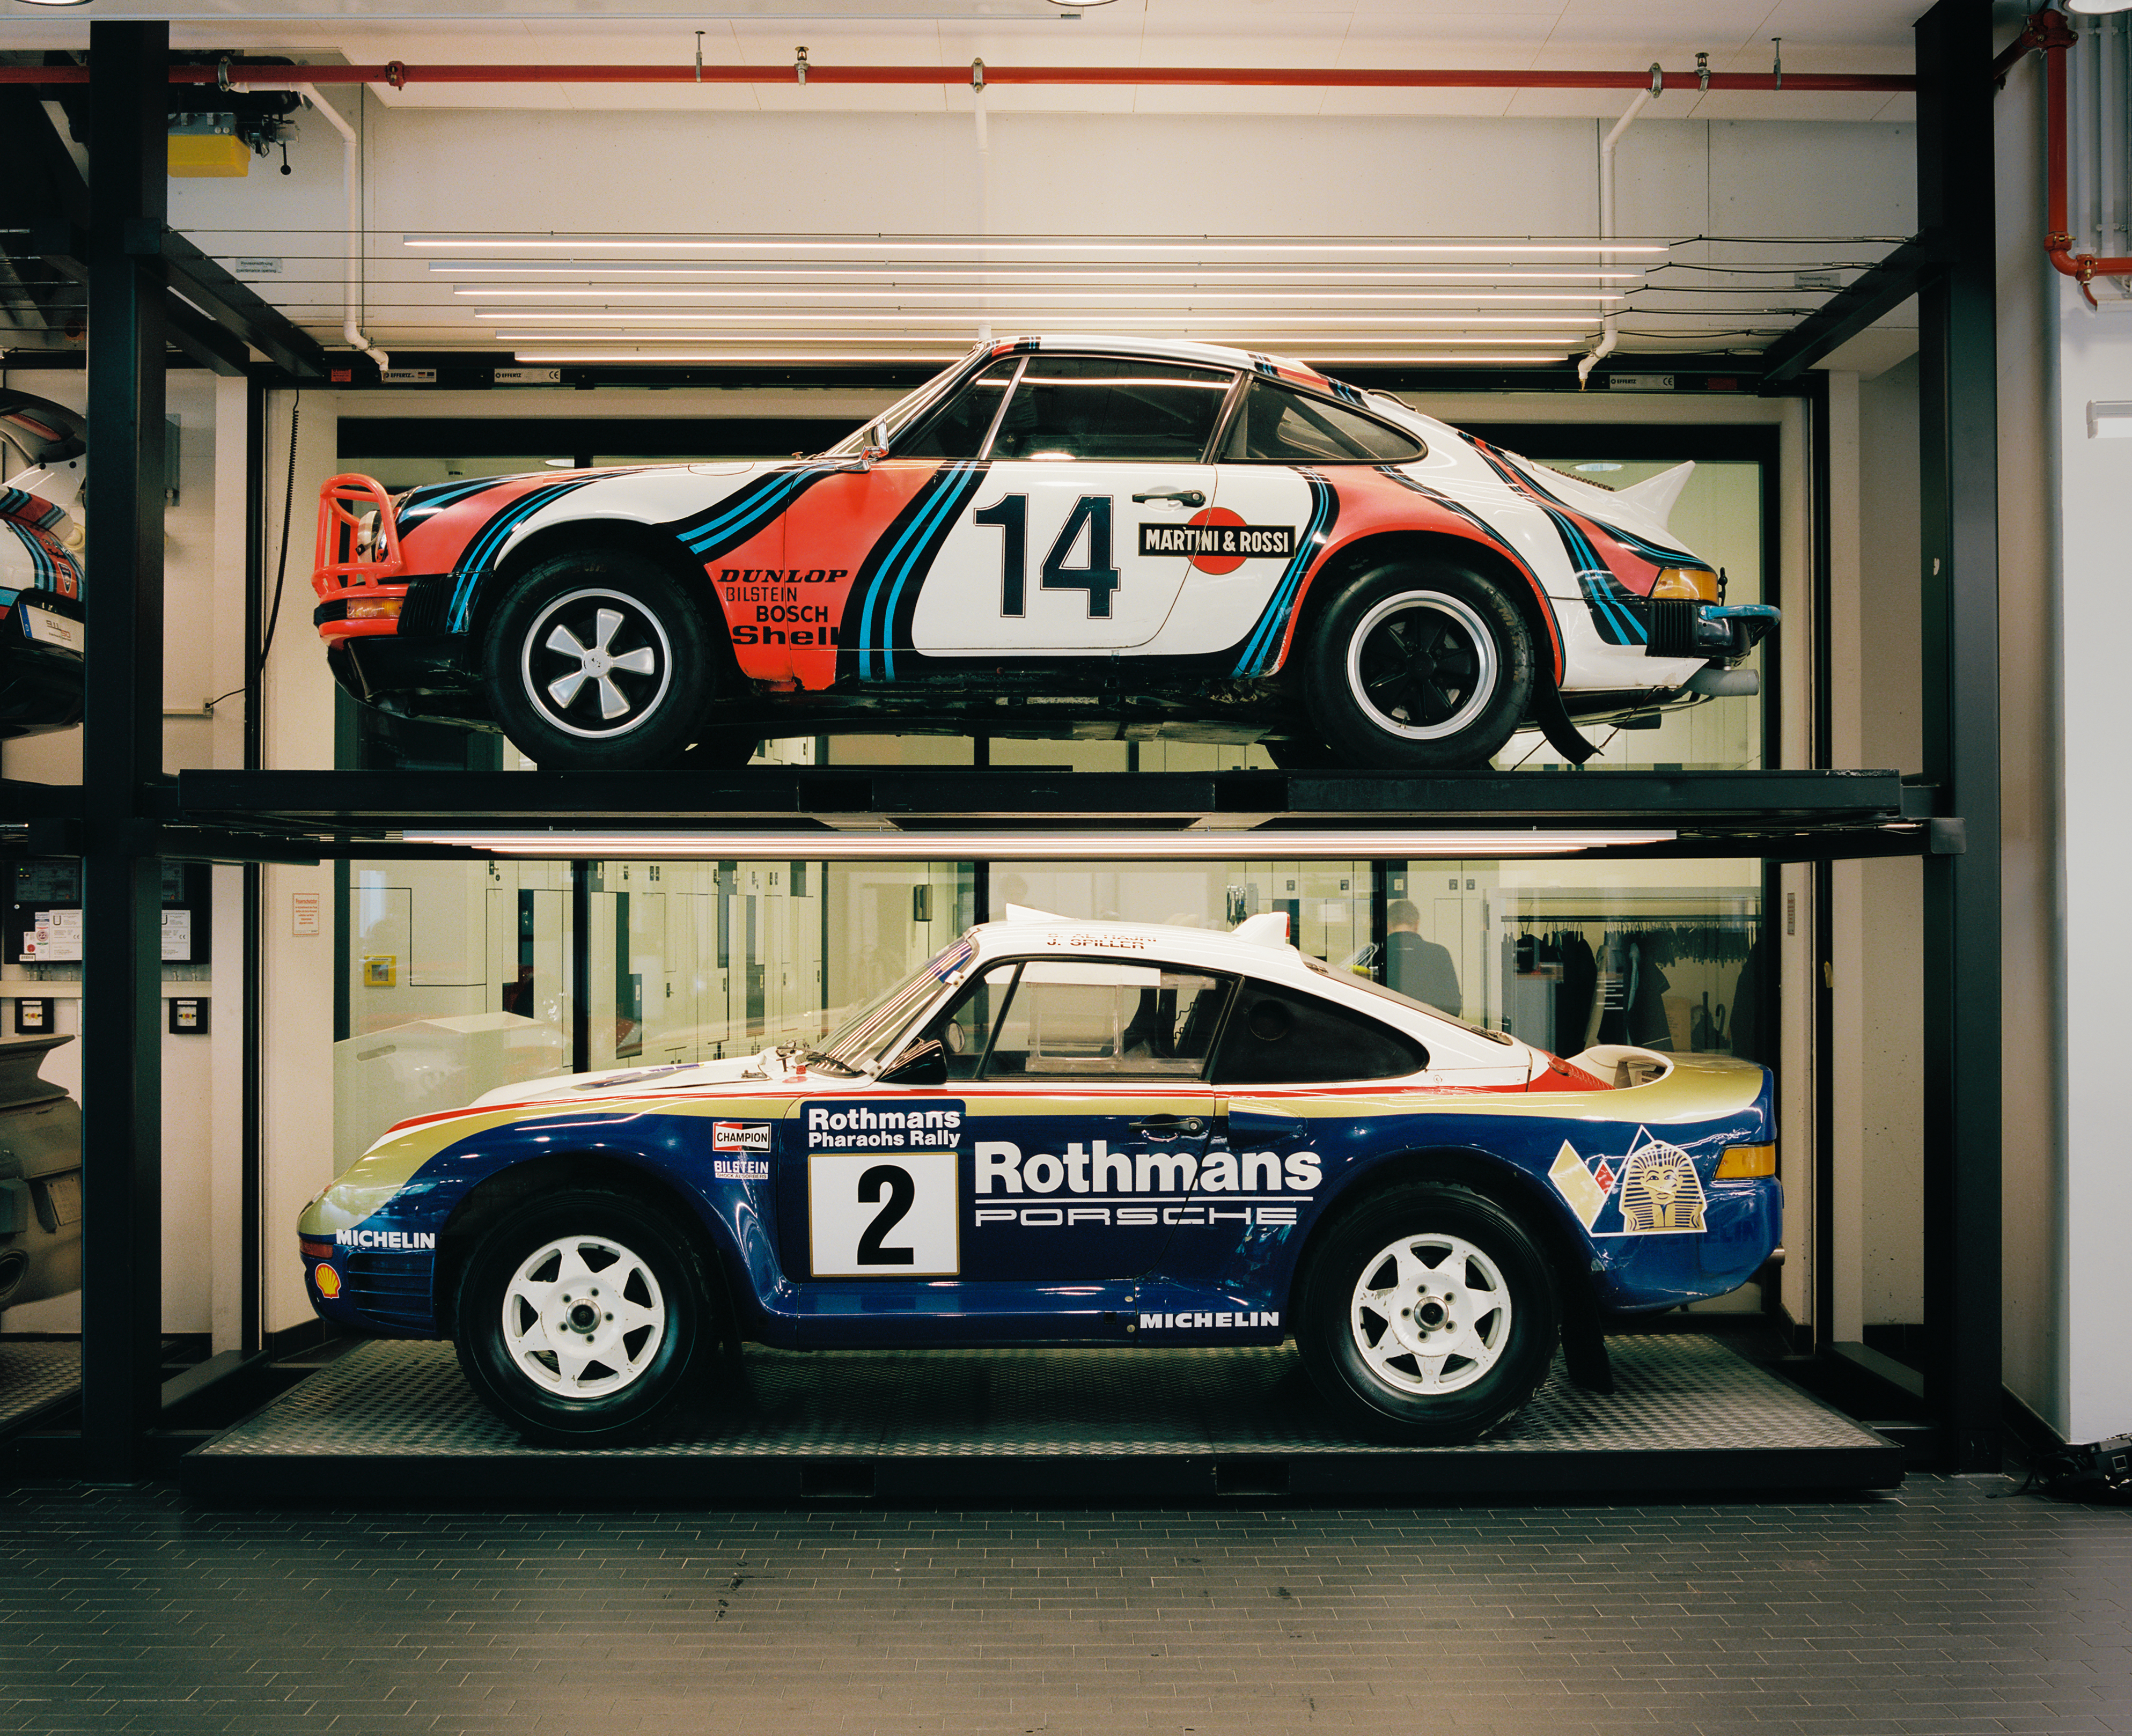 Porsche racecars in racing livery in the Porsche Museum workshop